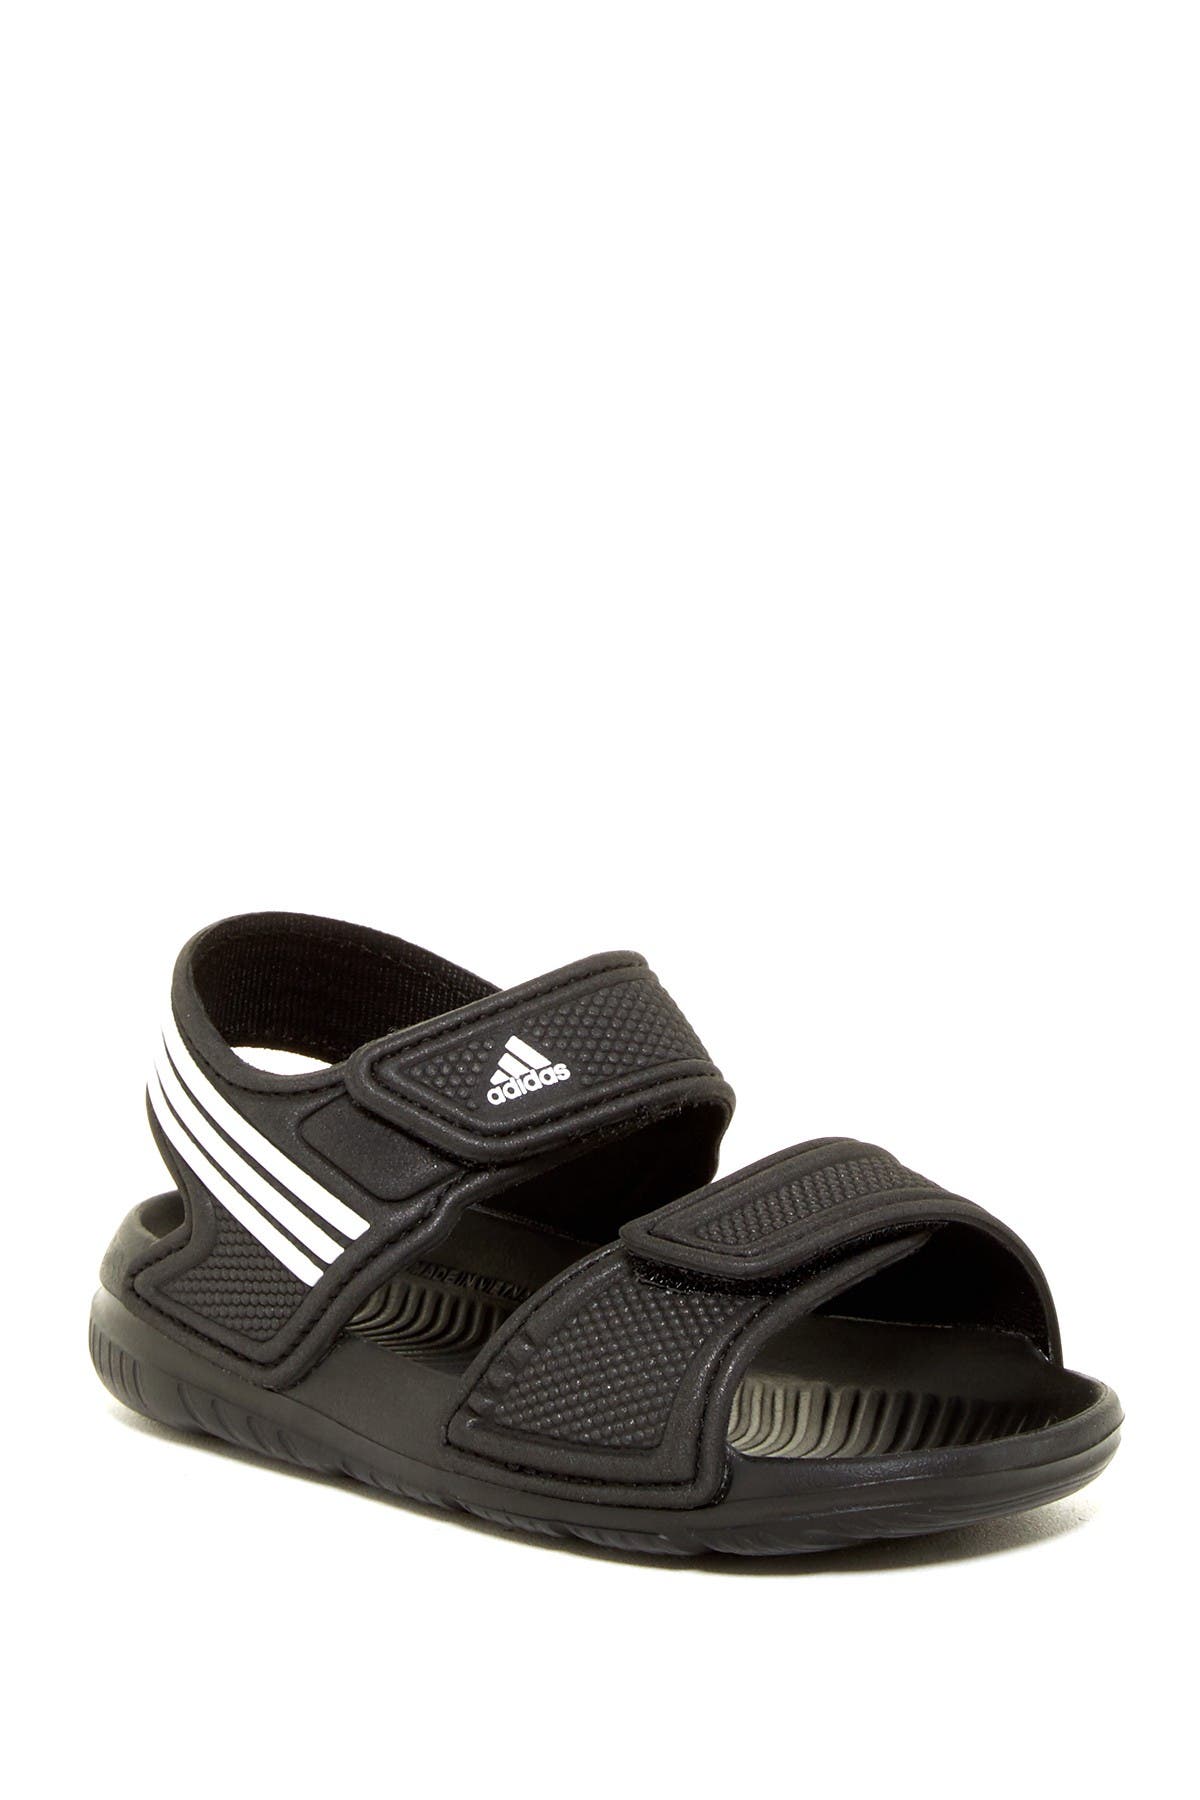 adidas | Akwah 9 Molded Open Toe Sandal 